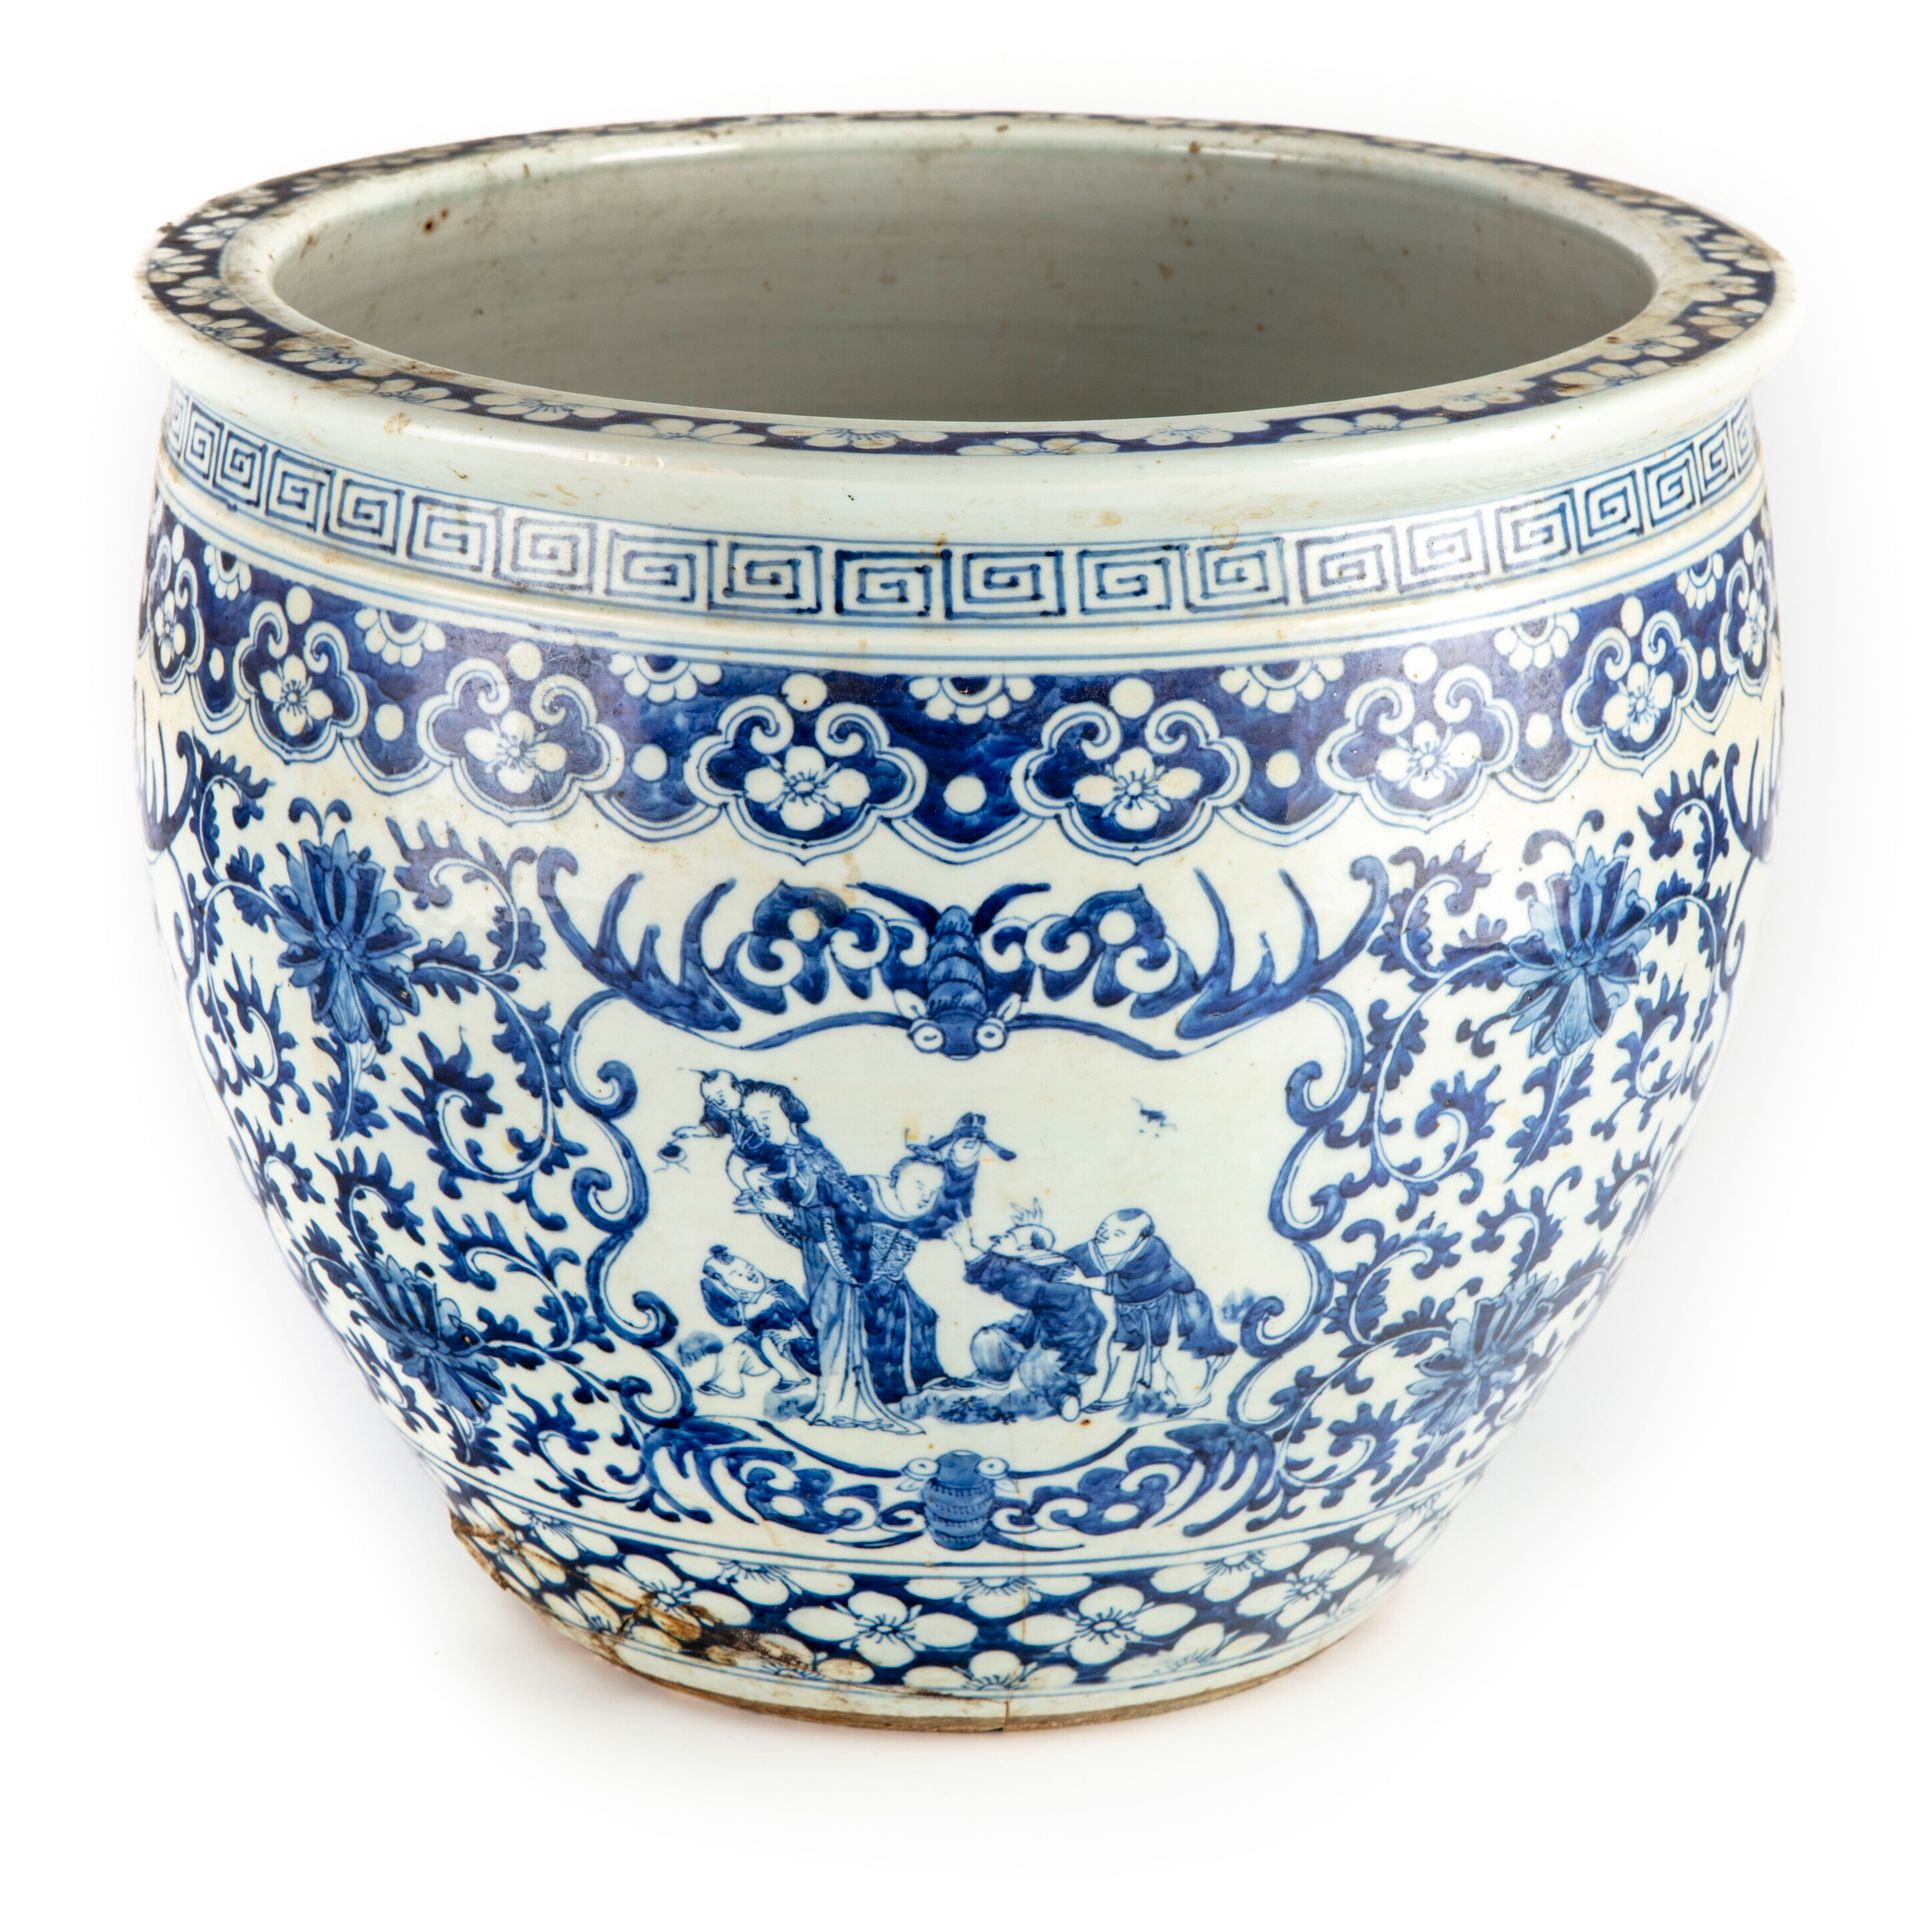 CHINE CHINA

Acuario de porcelana con decoración azul y blanca de follaje, lambr&hellip;